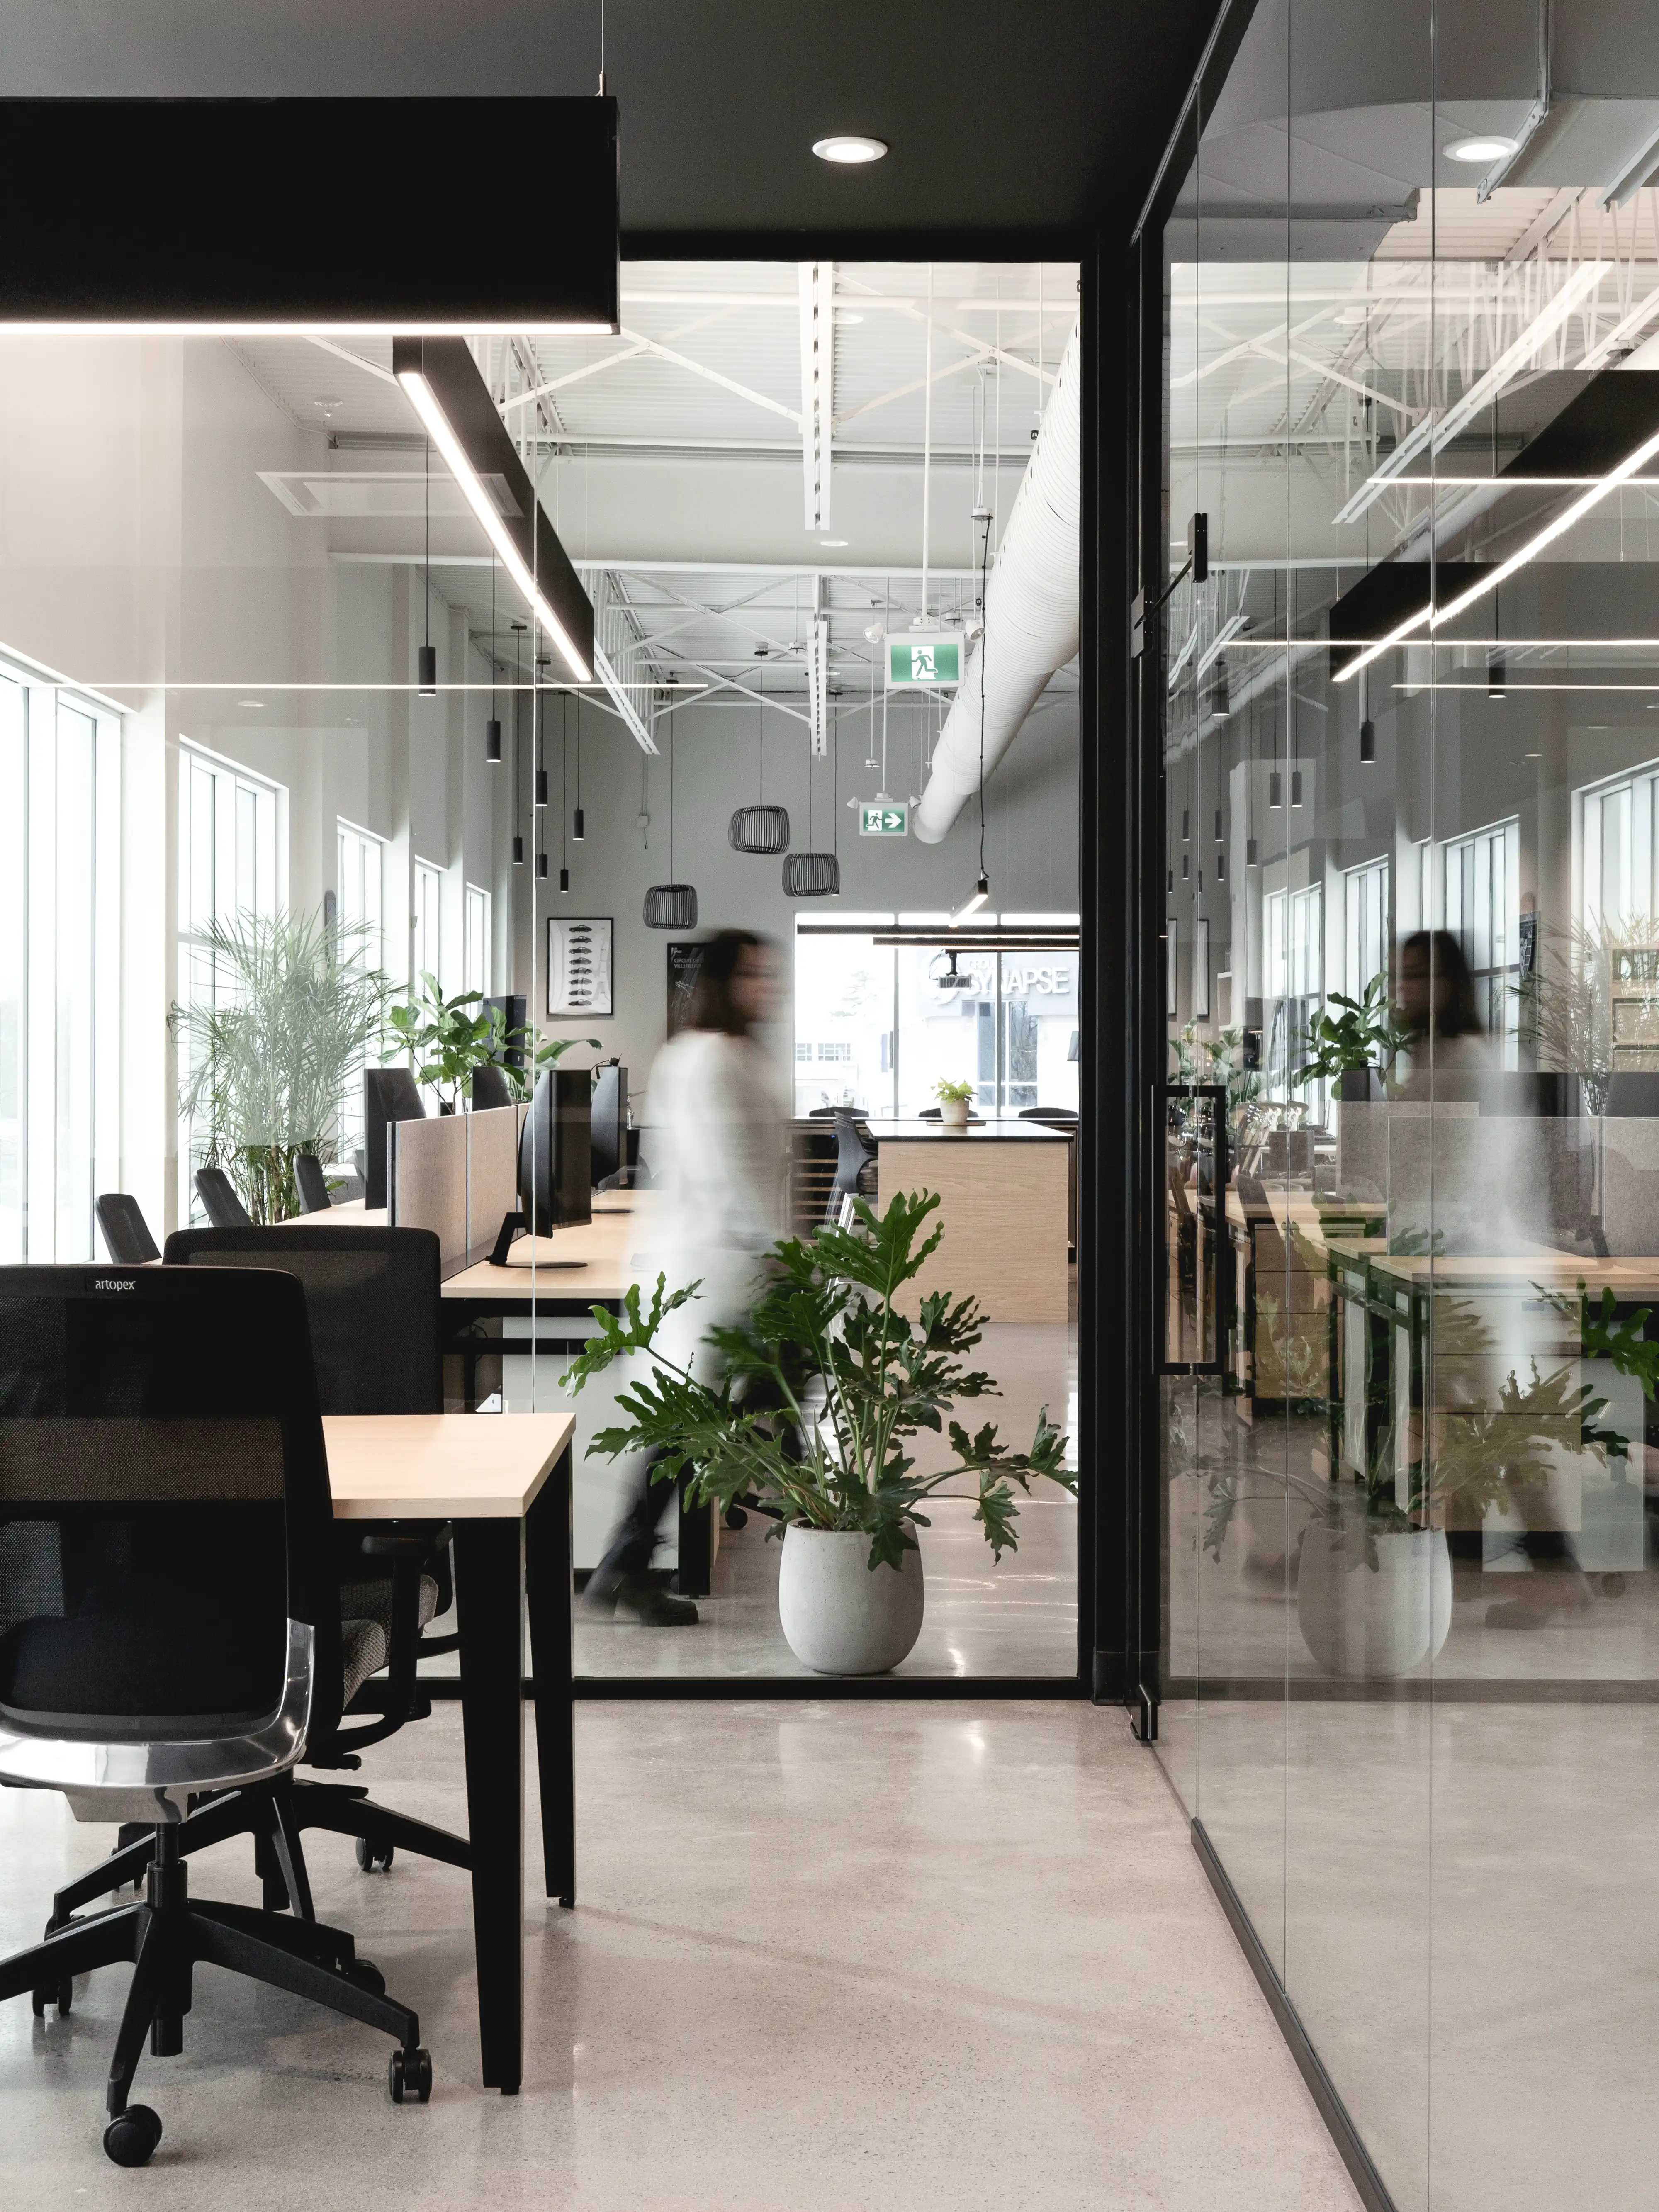 Un espace de bureau moderne avec un schéma de couleurs noir et blanc, de grandes fenêtres, des postes de travail, des plantes et un mur de verre, intérieur signé Sarah Brown Design